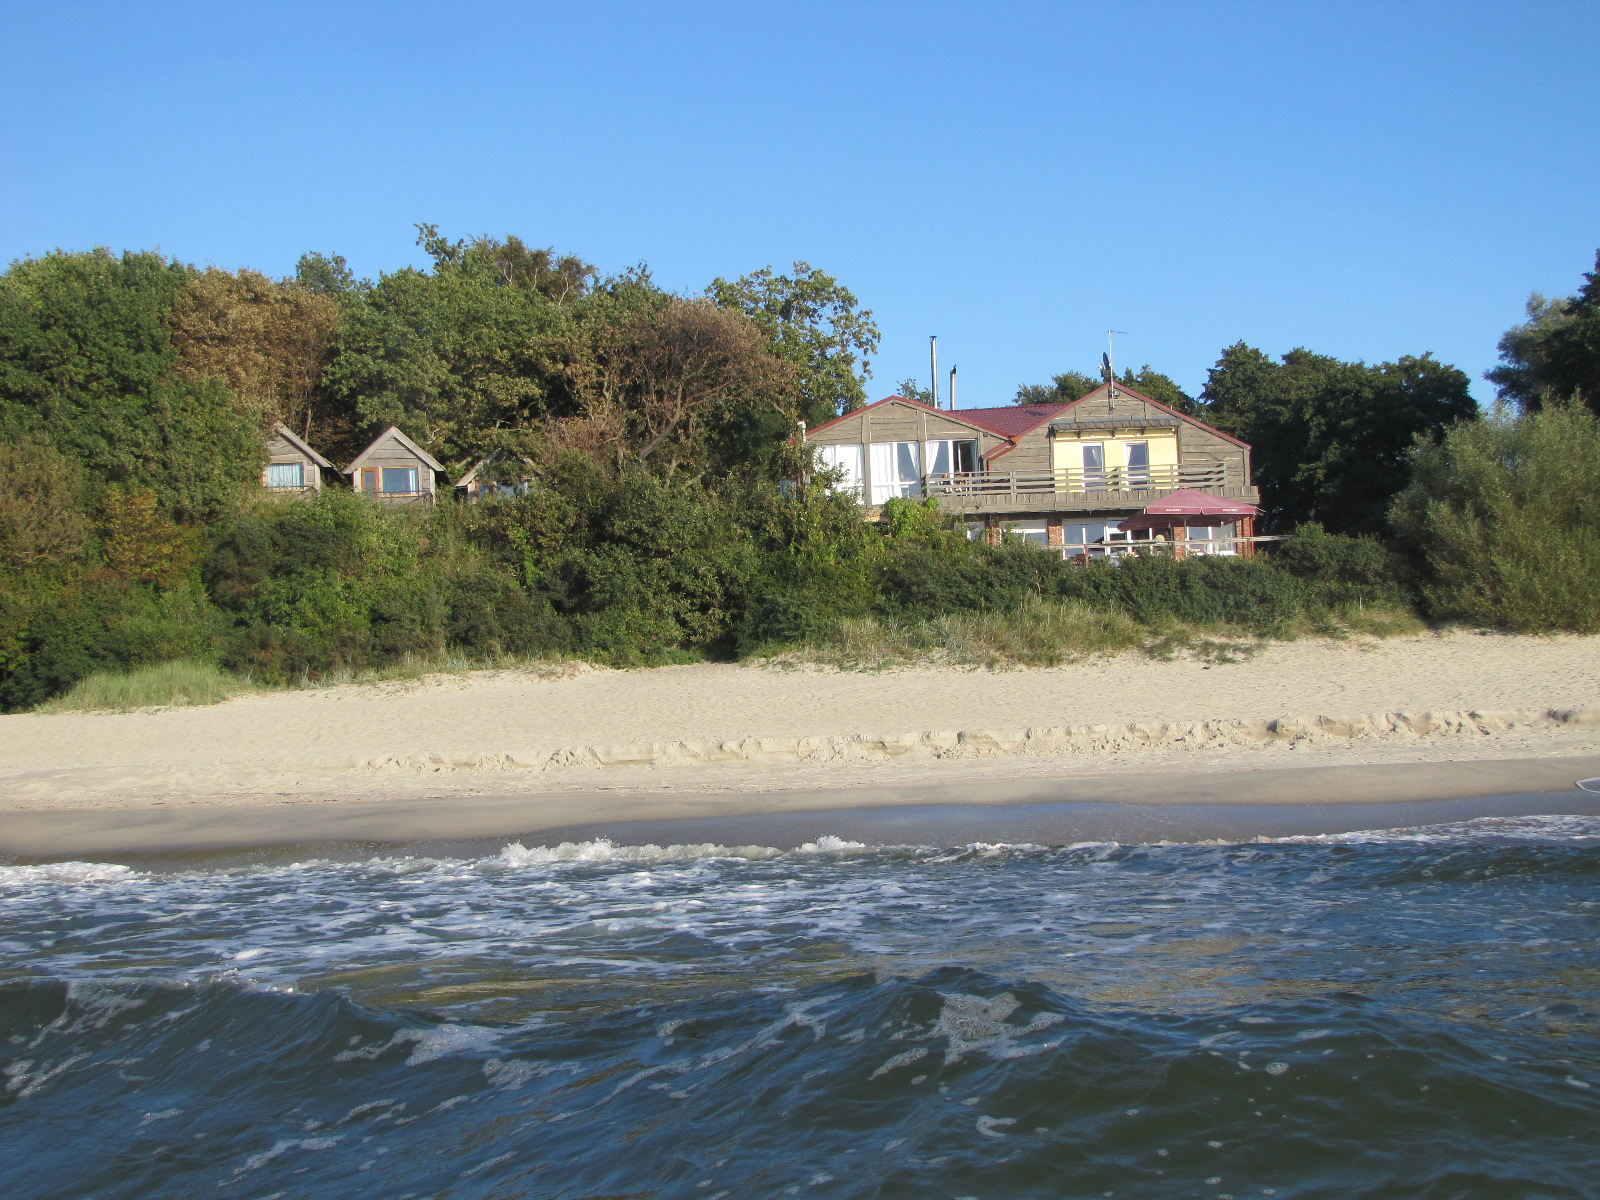 Vitland beach'in fotoğrafı doğal alan içinde bulunmaktadır